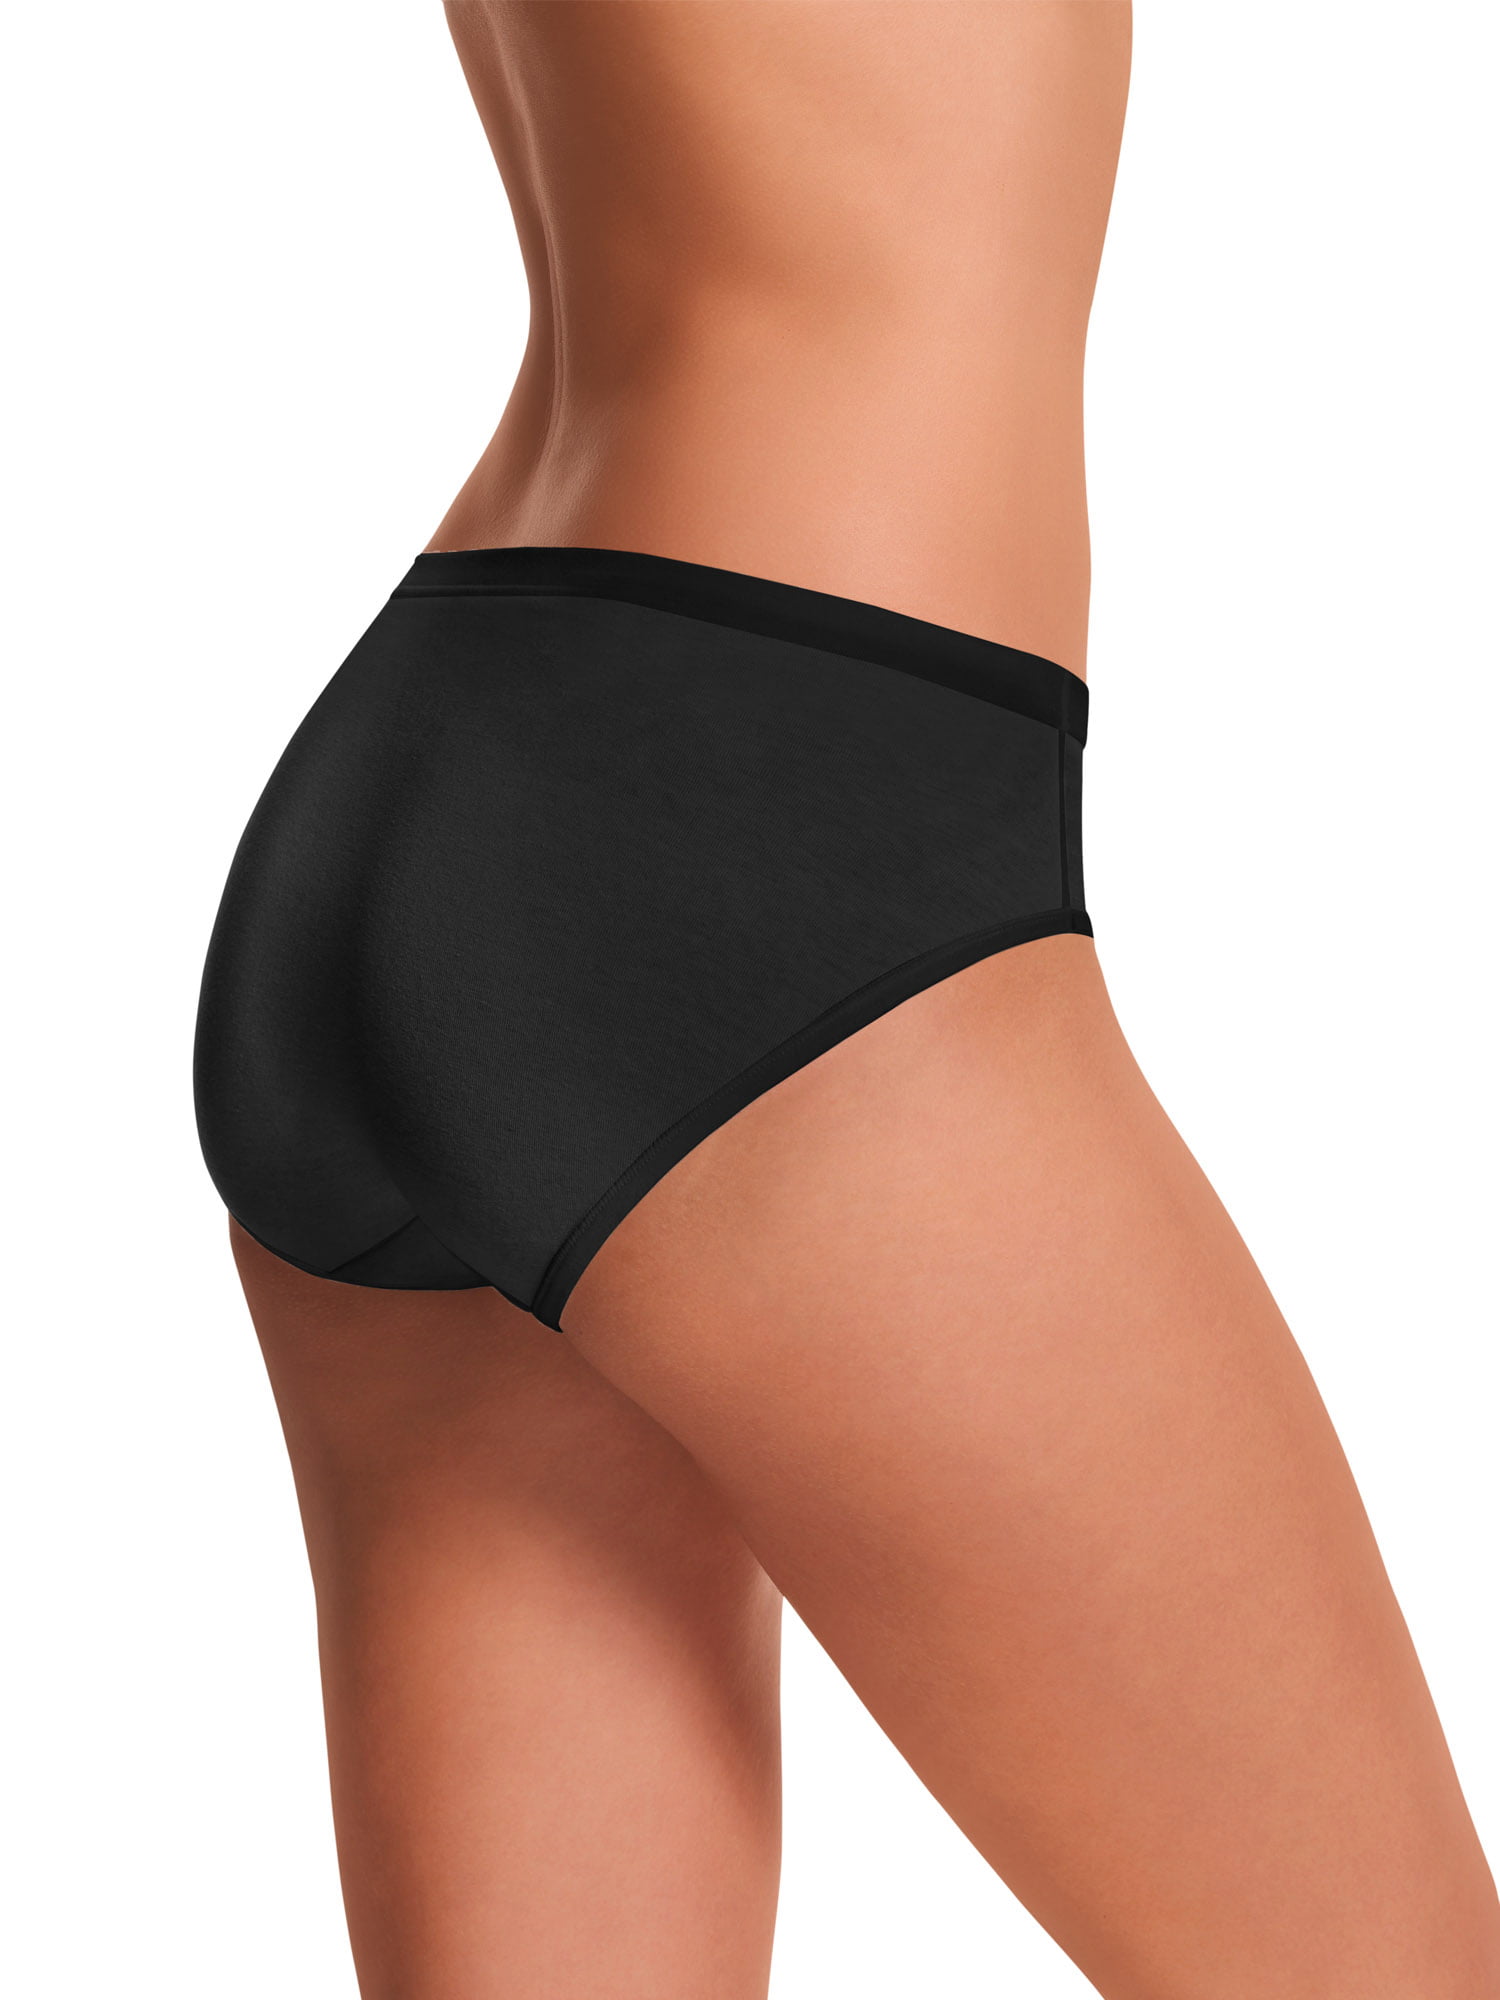 Hanes Women's Low Rise Comfort Soft Waistband Brief Underwear, 6